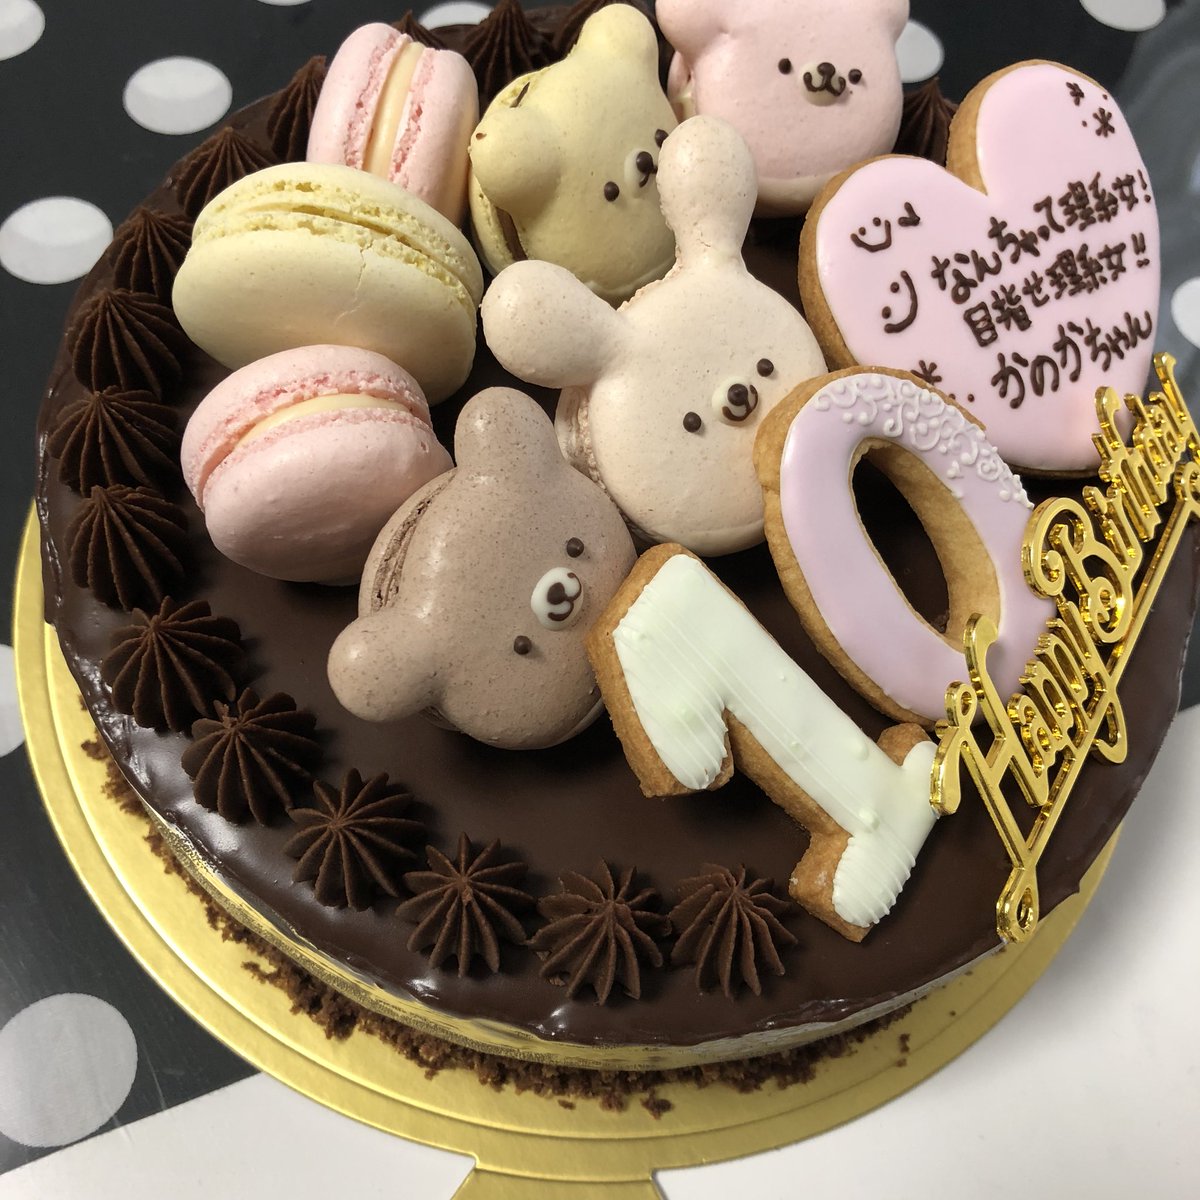 ボンマジ Hitomi たのまれものお誕生日ケーキ フルーツ苦手チョコレート大好きとのことで リッチチョコケーキに 3 二分の一成人ということで華やかに 飾りもマカロンとアイシングクッキーでかわいらしく 手作りケーキ マカロン